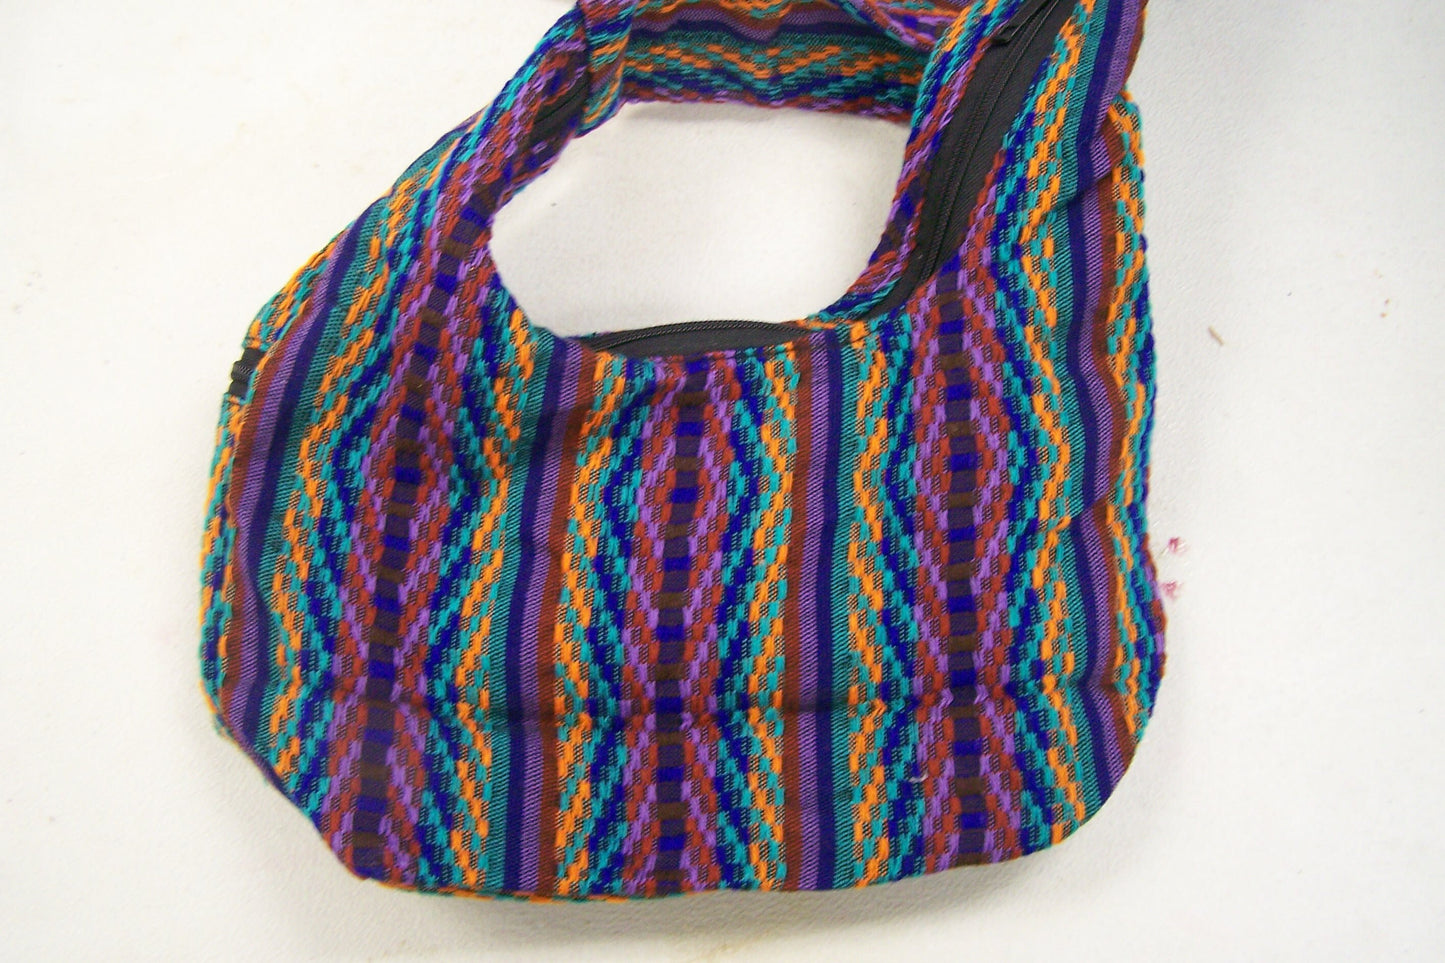 SALE! Cotton Guatemalan Shoulder Bag Purse, 2 Lined Zipper Pouches - Darker Purple